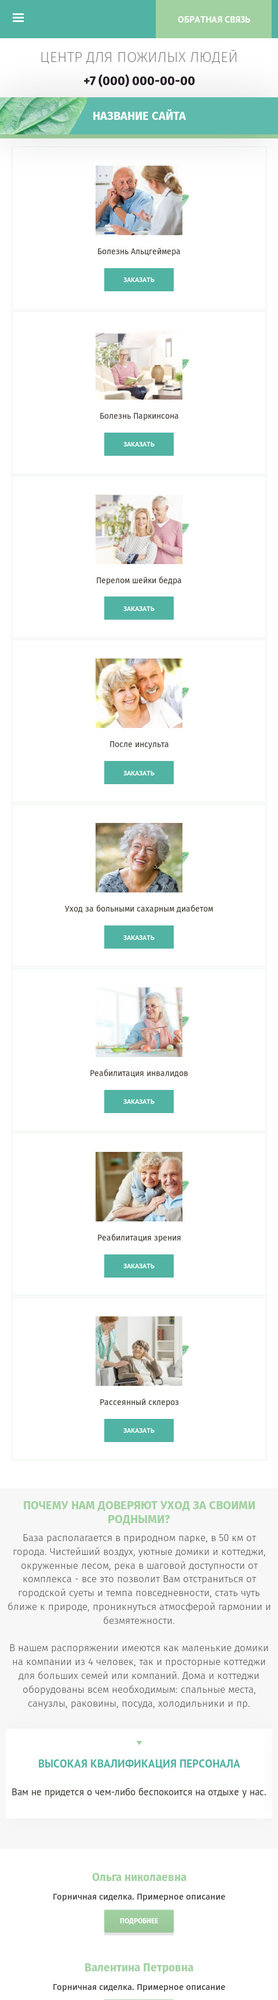 Готовый Сайт-Бизнес № 2093362 - Центр для пожилых людей (Мобильная версия)